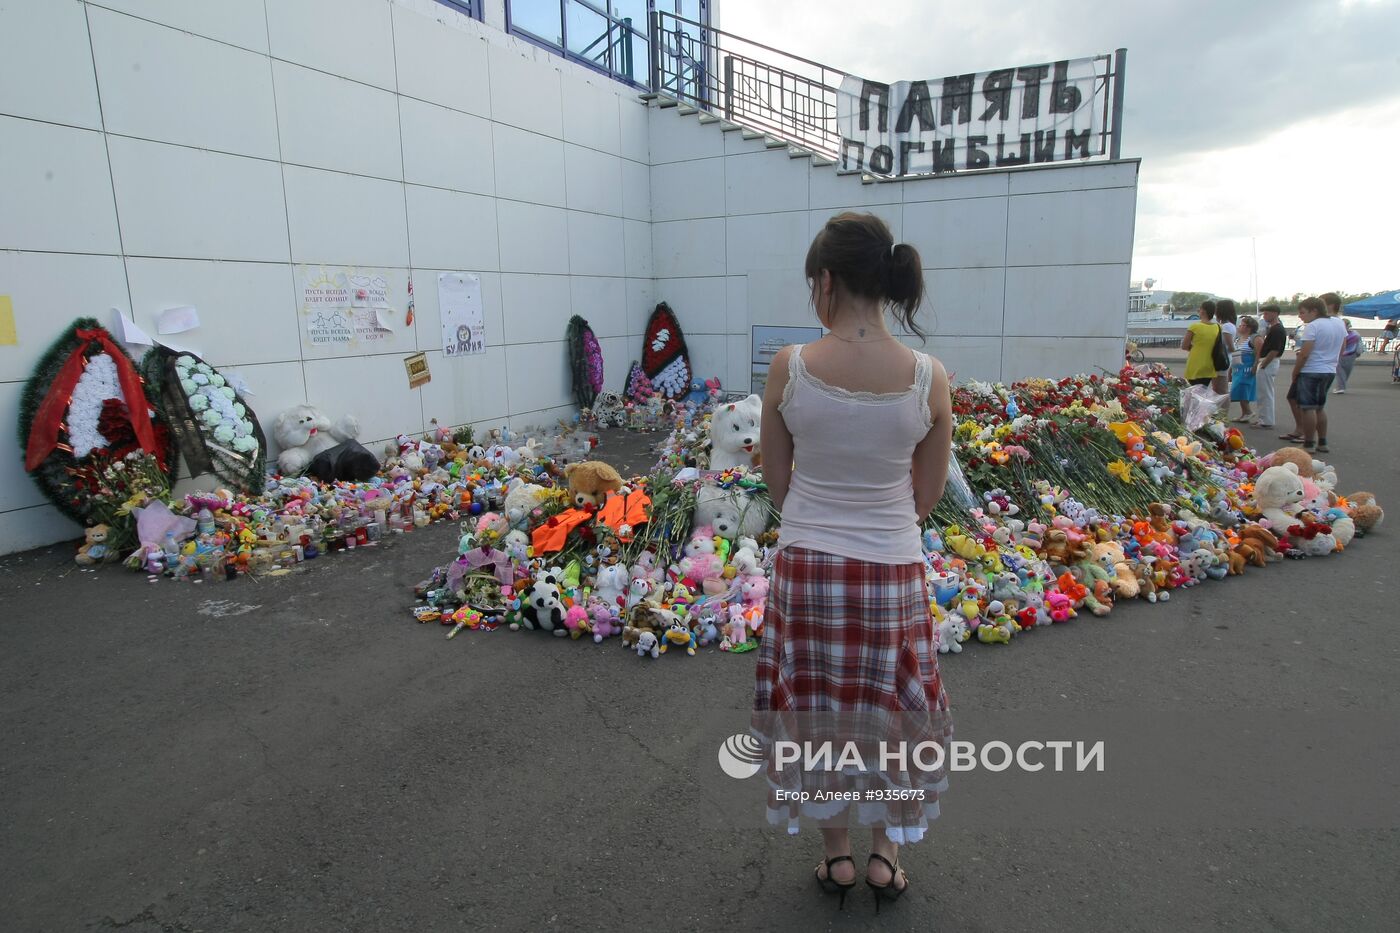 9 дней после гибели пассажиров на теплоходе "Булгария"